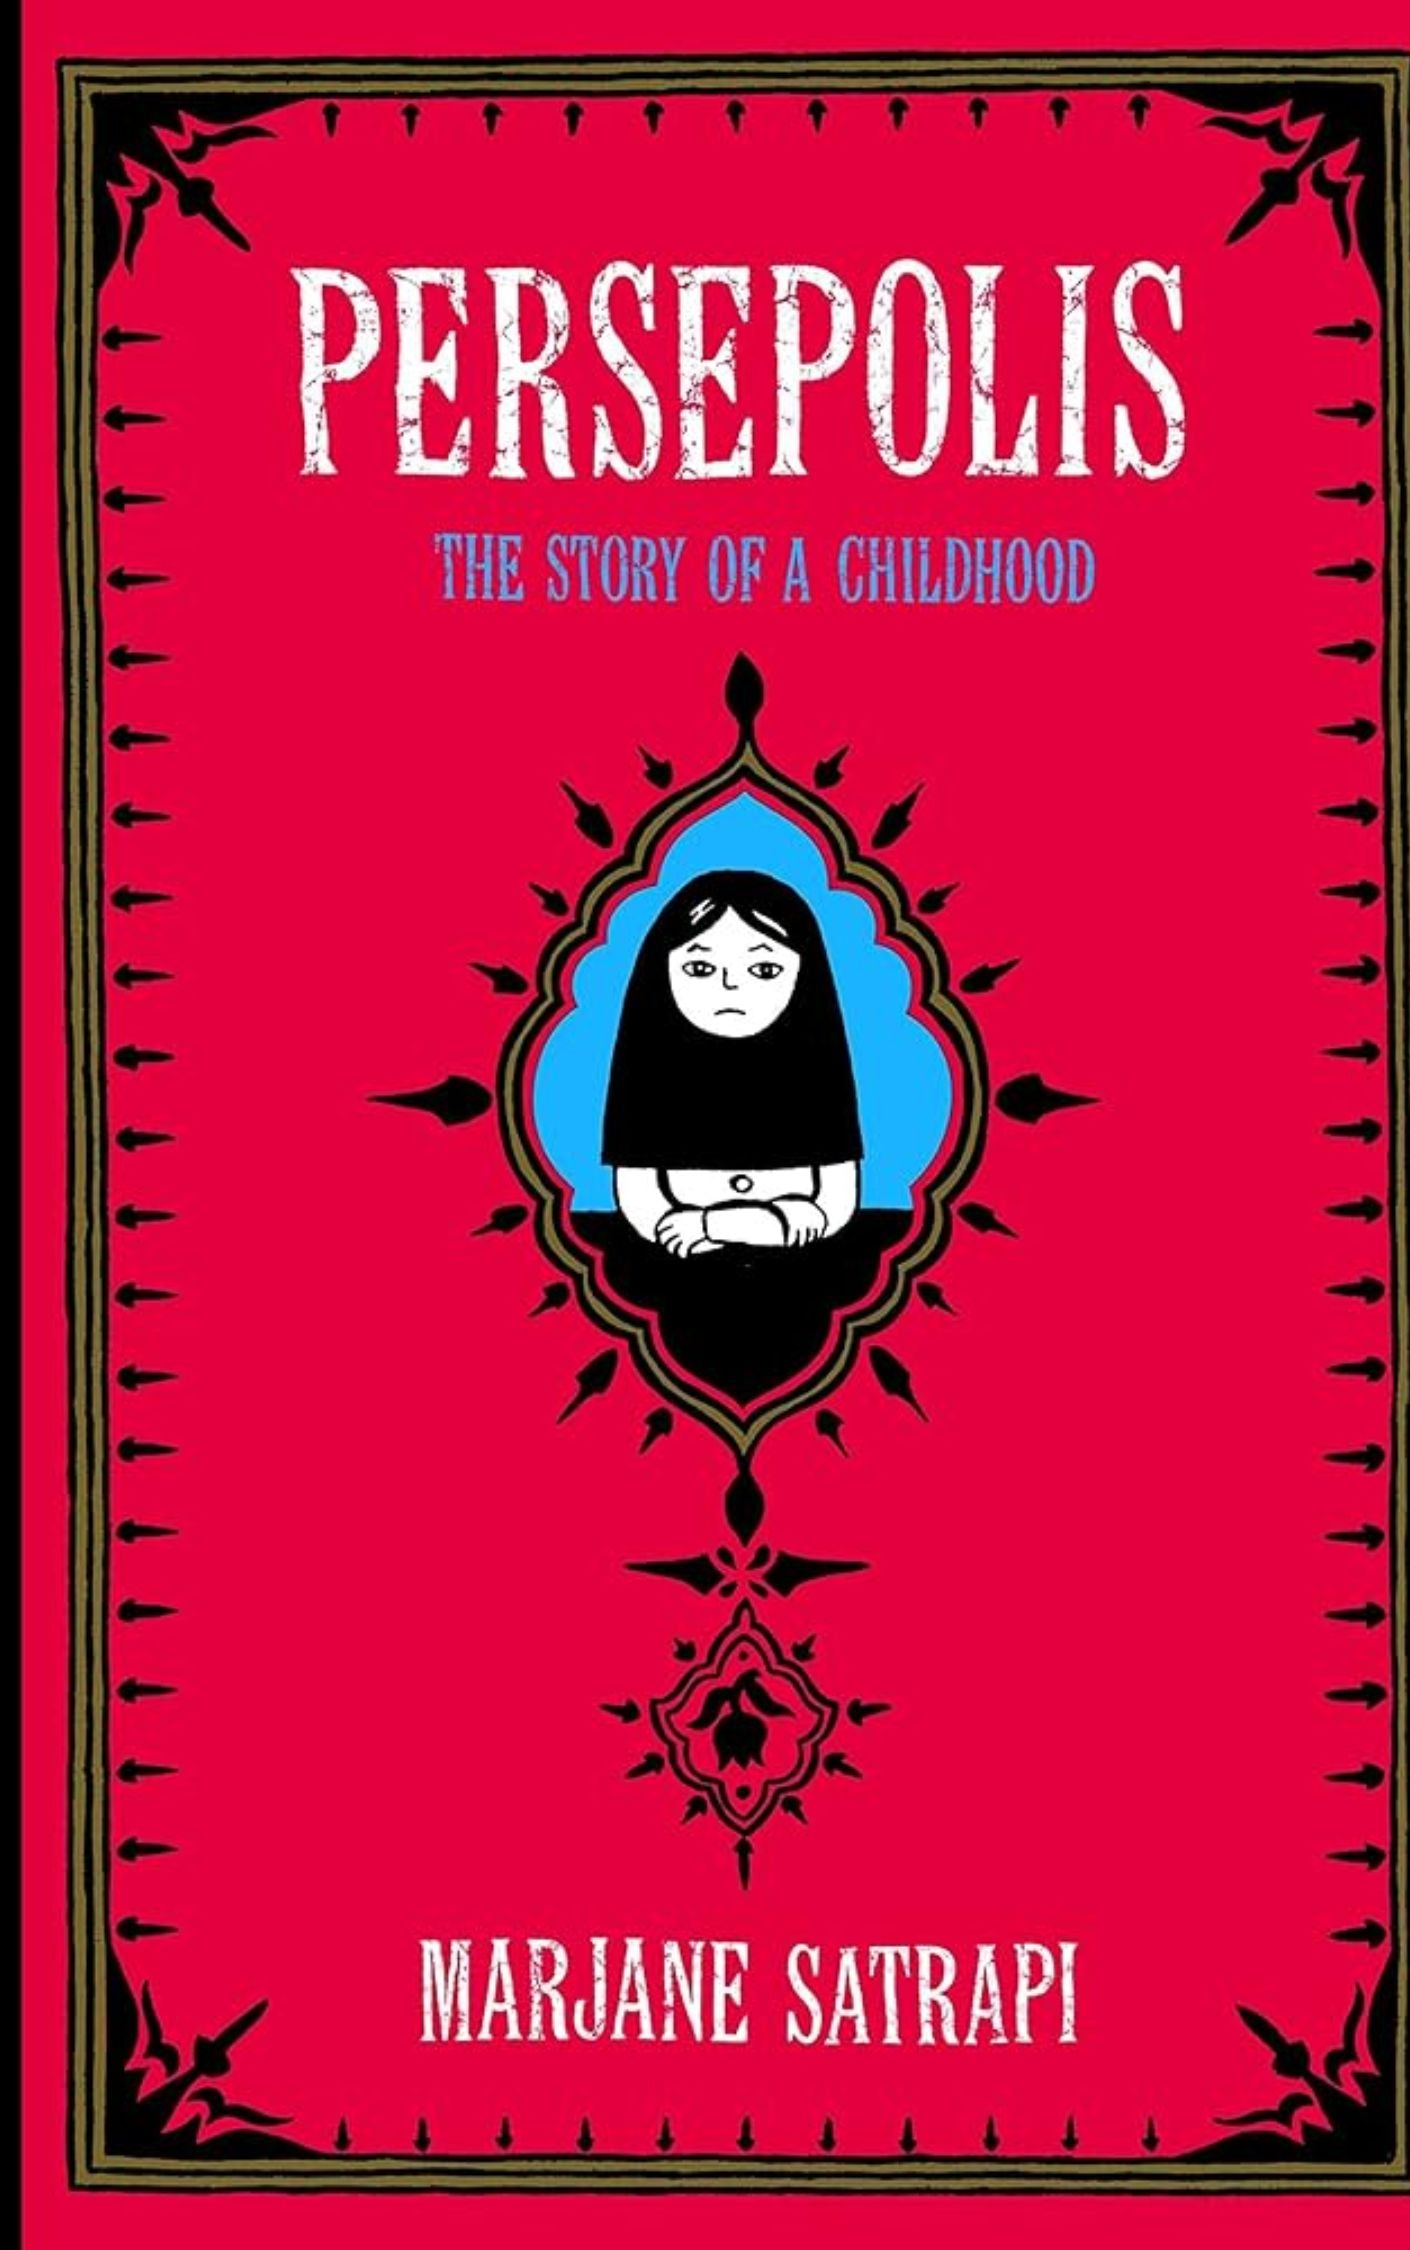 Persepolis" by Marjane Satrapi: Books For Women